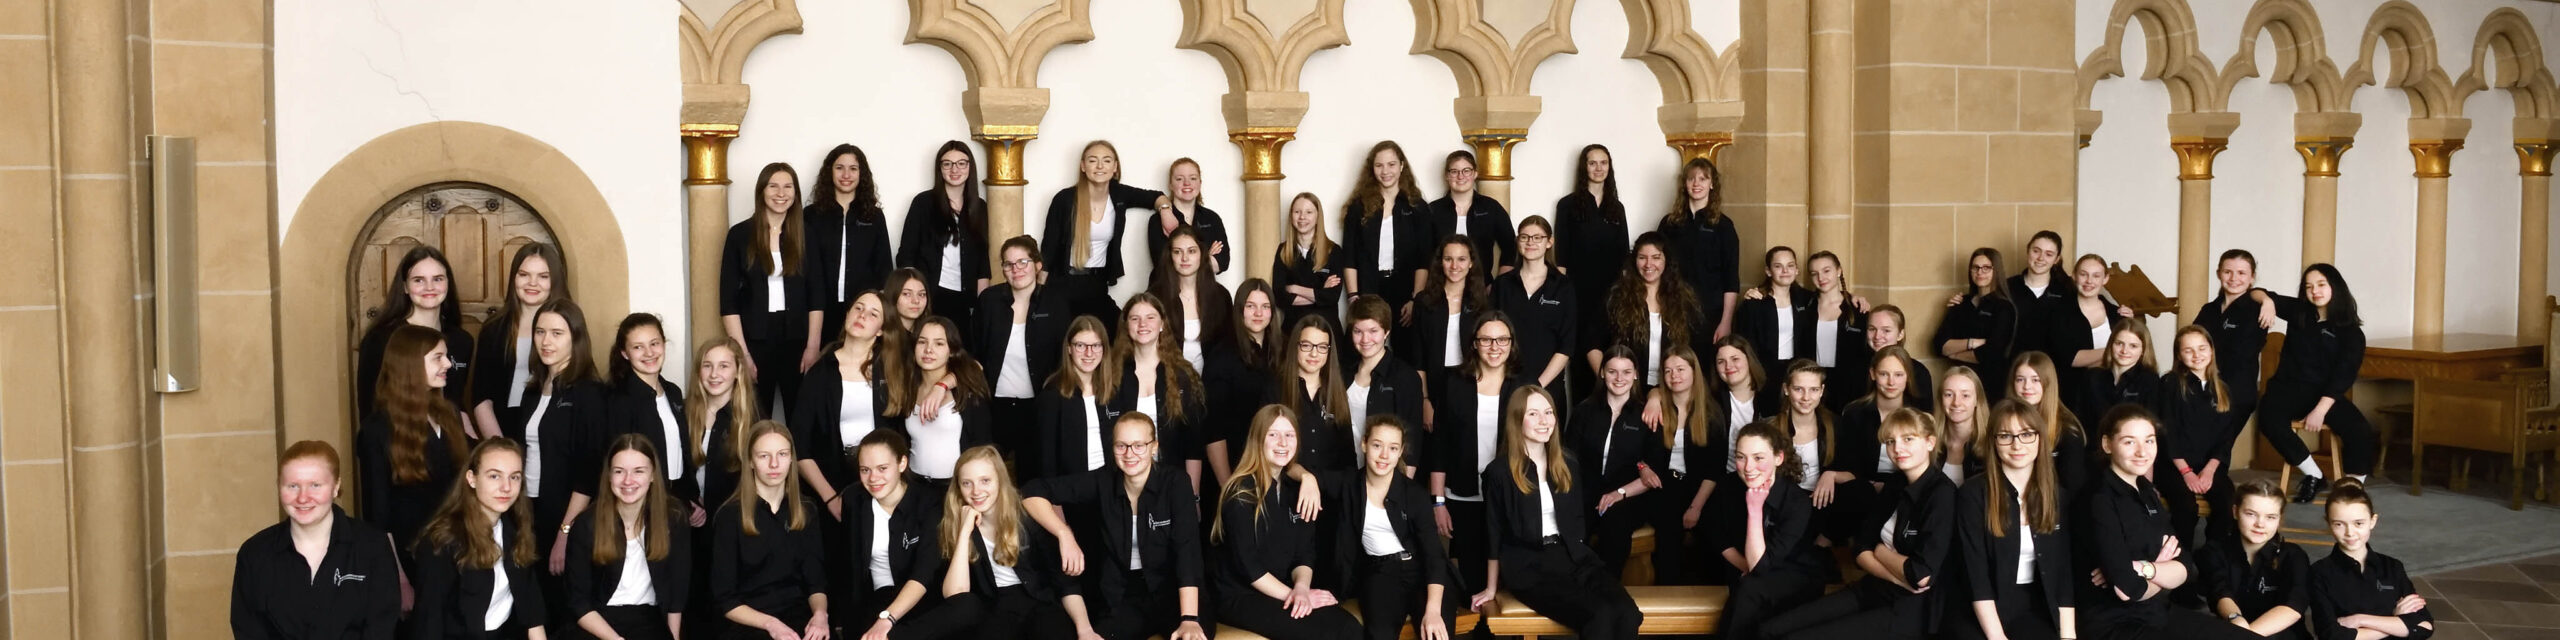 Gruppenfoto Mädchenkantorei am Paderborner Dom